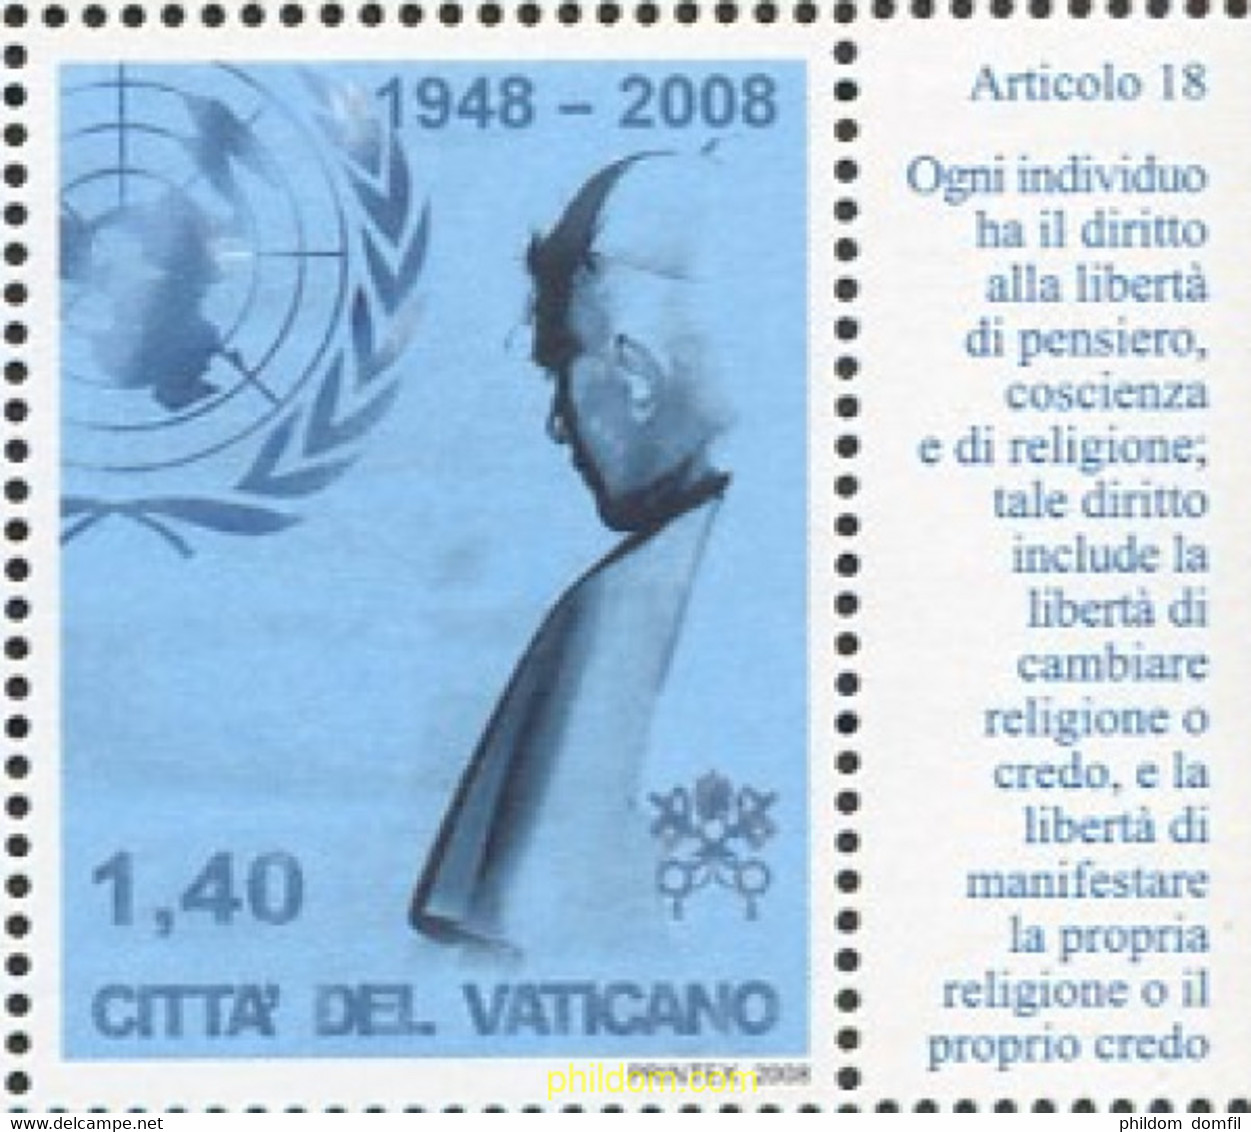 688549 MNH VATICANO 2008 VISITA DEL PAPA BENEDICTO XVI A LA ONU - Oblitérés